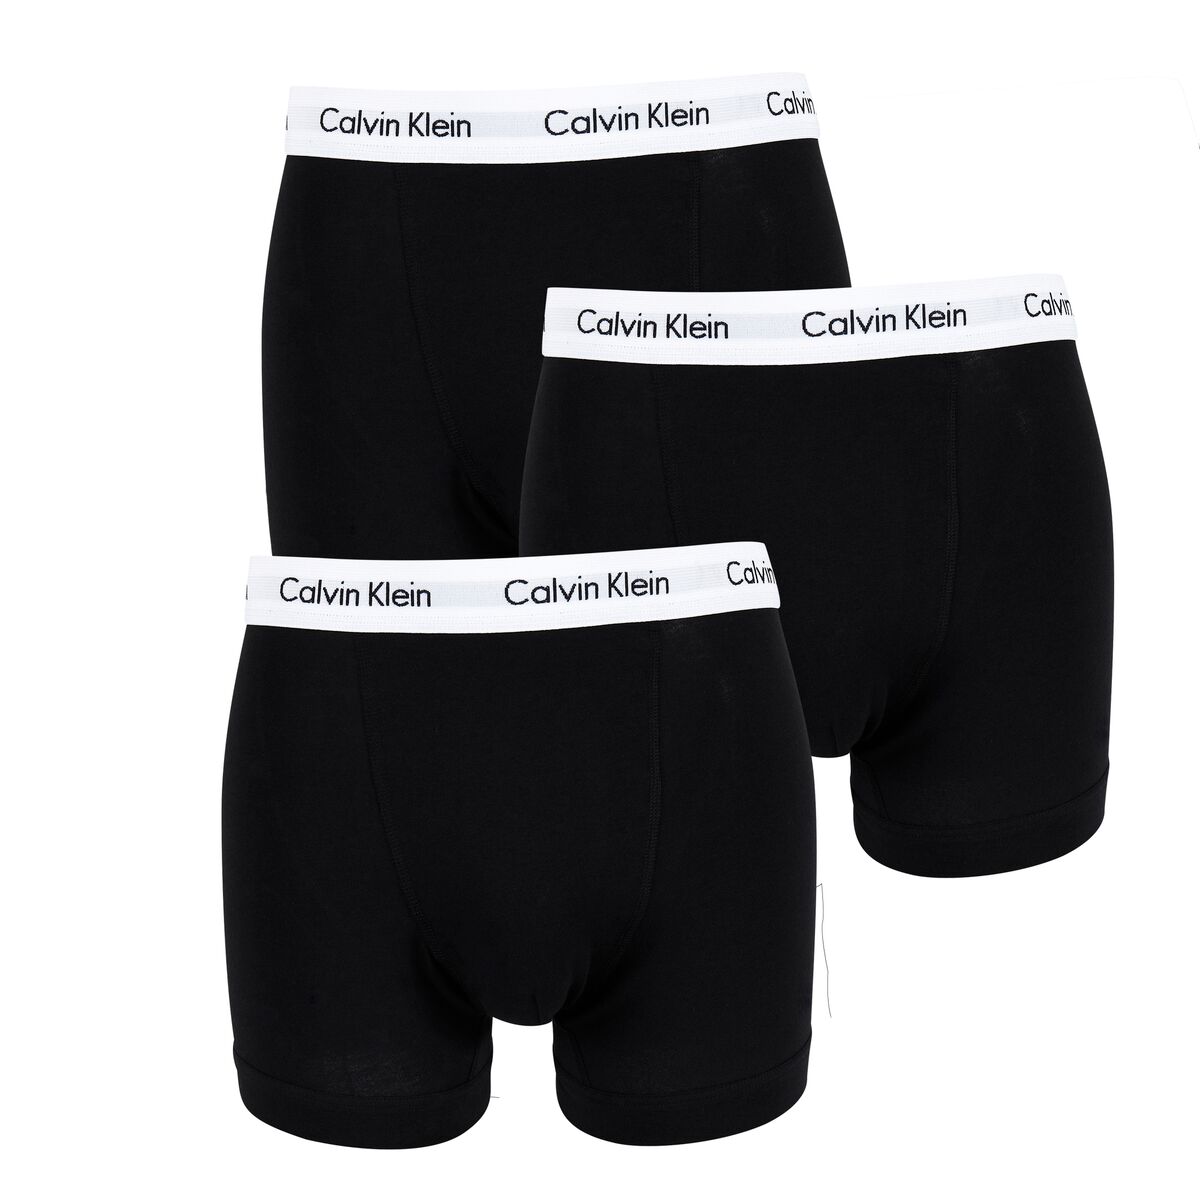 Calvin Klein Lote de 3 boxers em algodão stretch   Preto